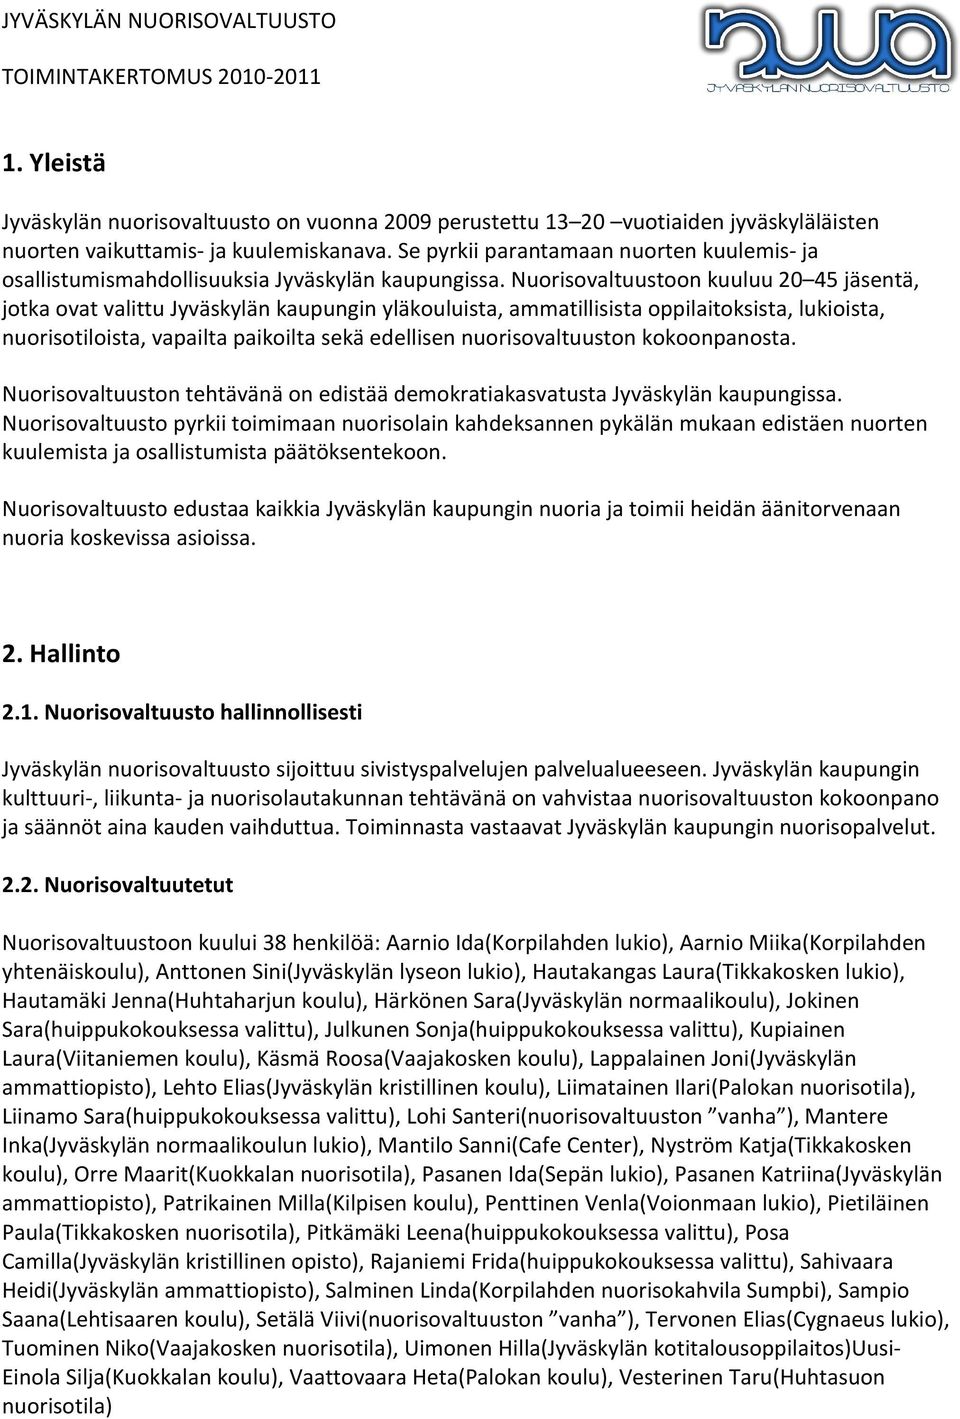 Nuorisovaltuustoon kuuluu 20 45 jäsentä, jotka ovat valittu Jyväskylän kaupungin yläkouluista, ammatillisista oppilaitoksista, lukioista, nuorisotiloista, vapailta paikoilta sekä edellisen